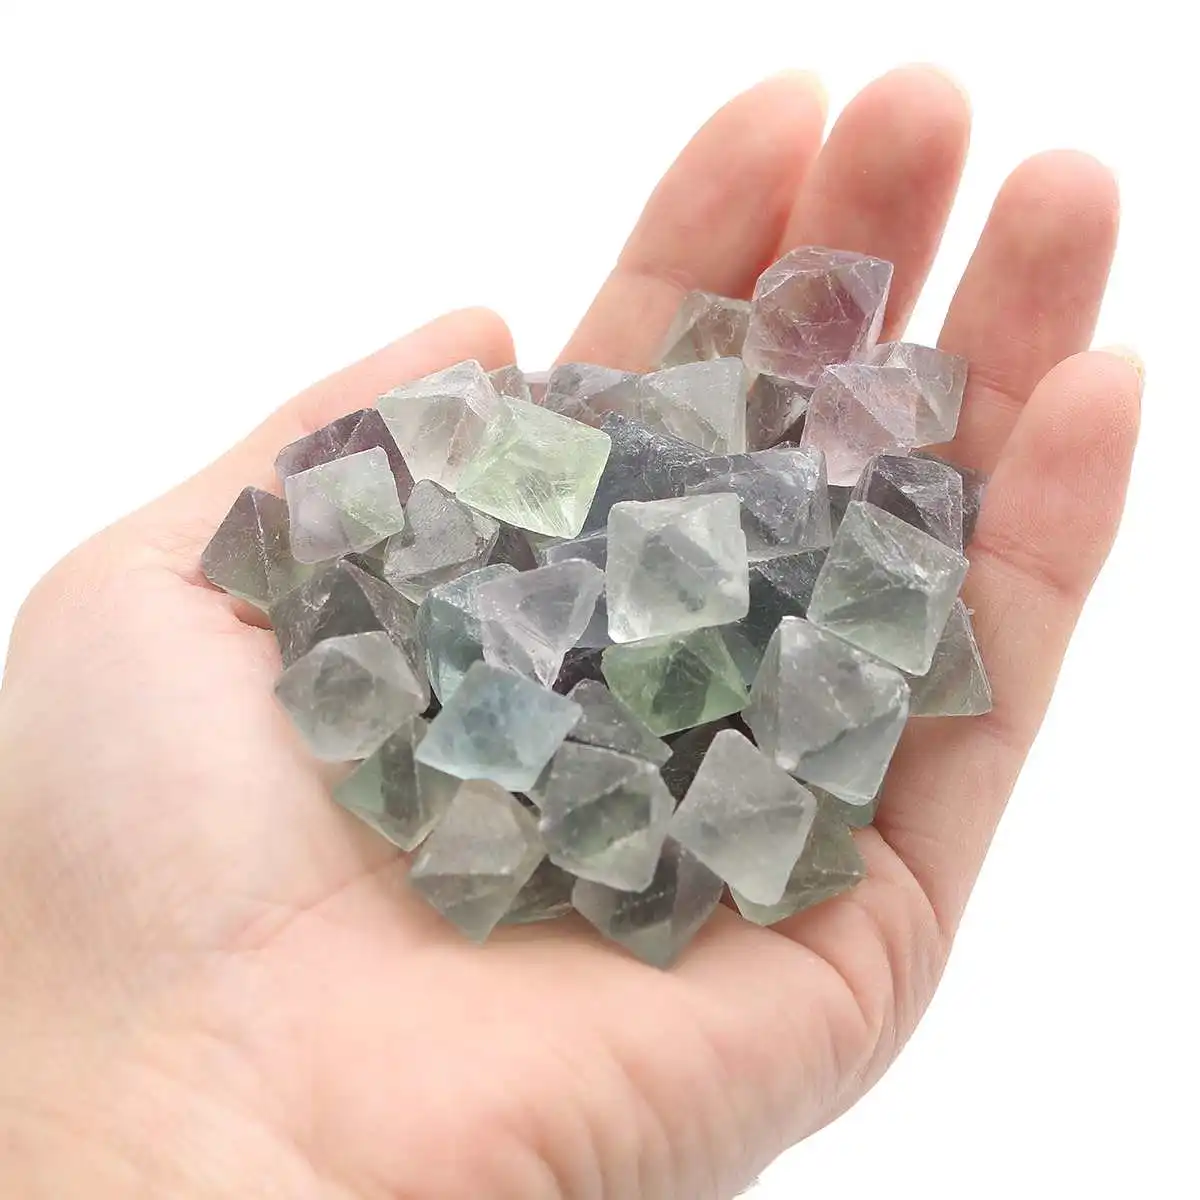 Около 50-60 шт 230 г синий и зеленый флюорит октаэдр кристаллы Камни лечебные камни флюорит сырье украшение из драгоценного камня камень